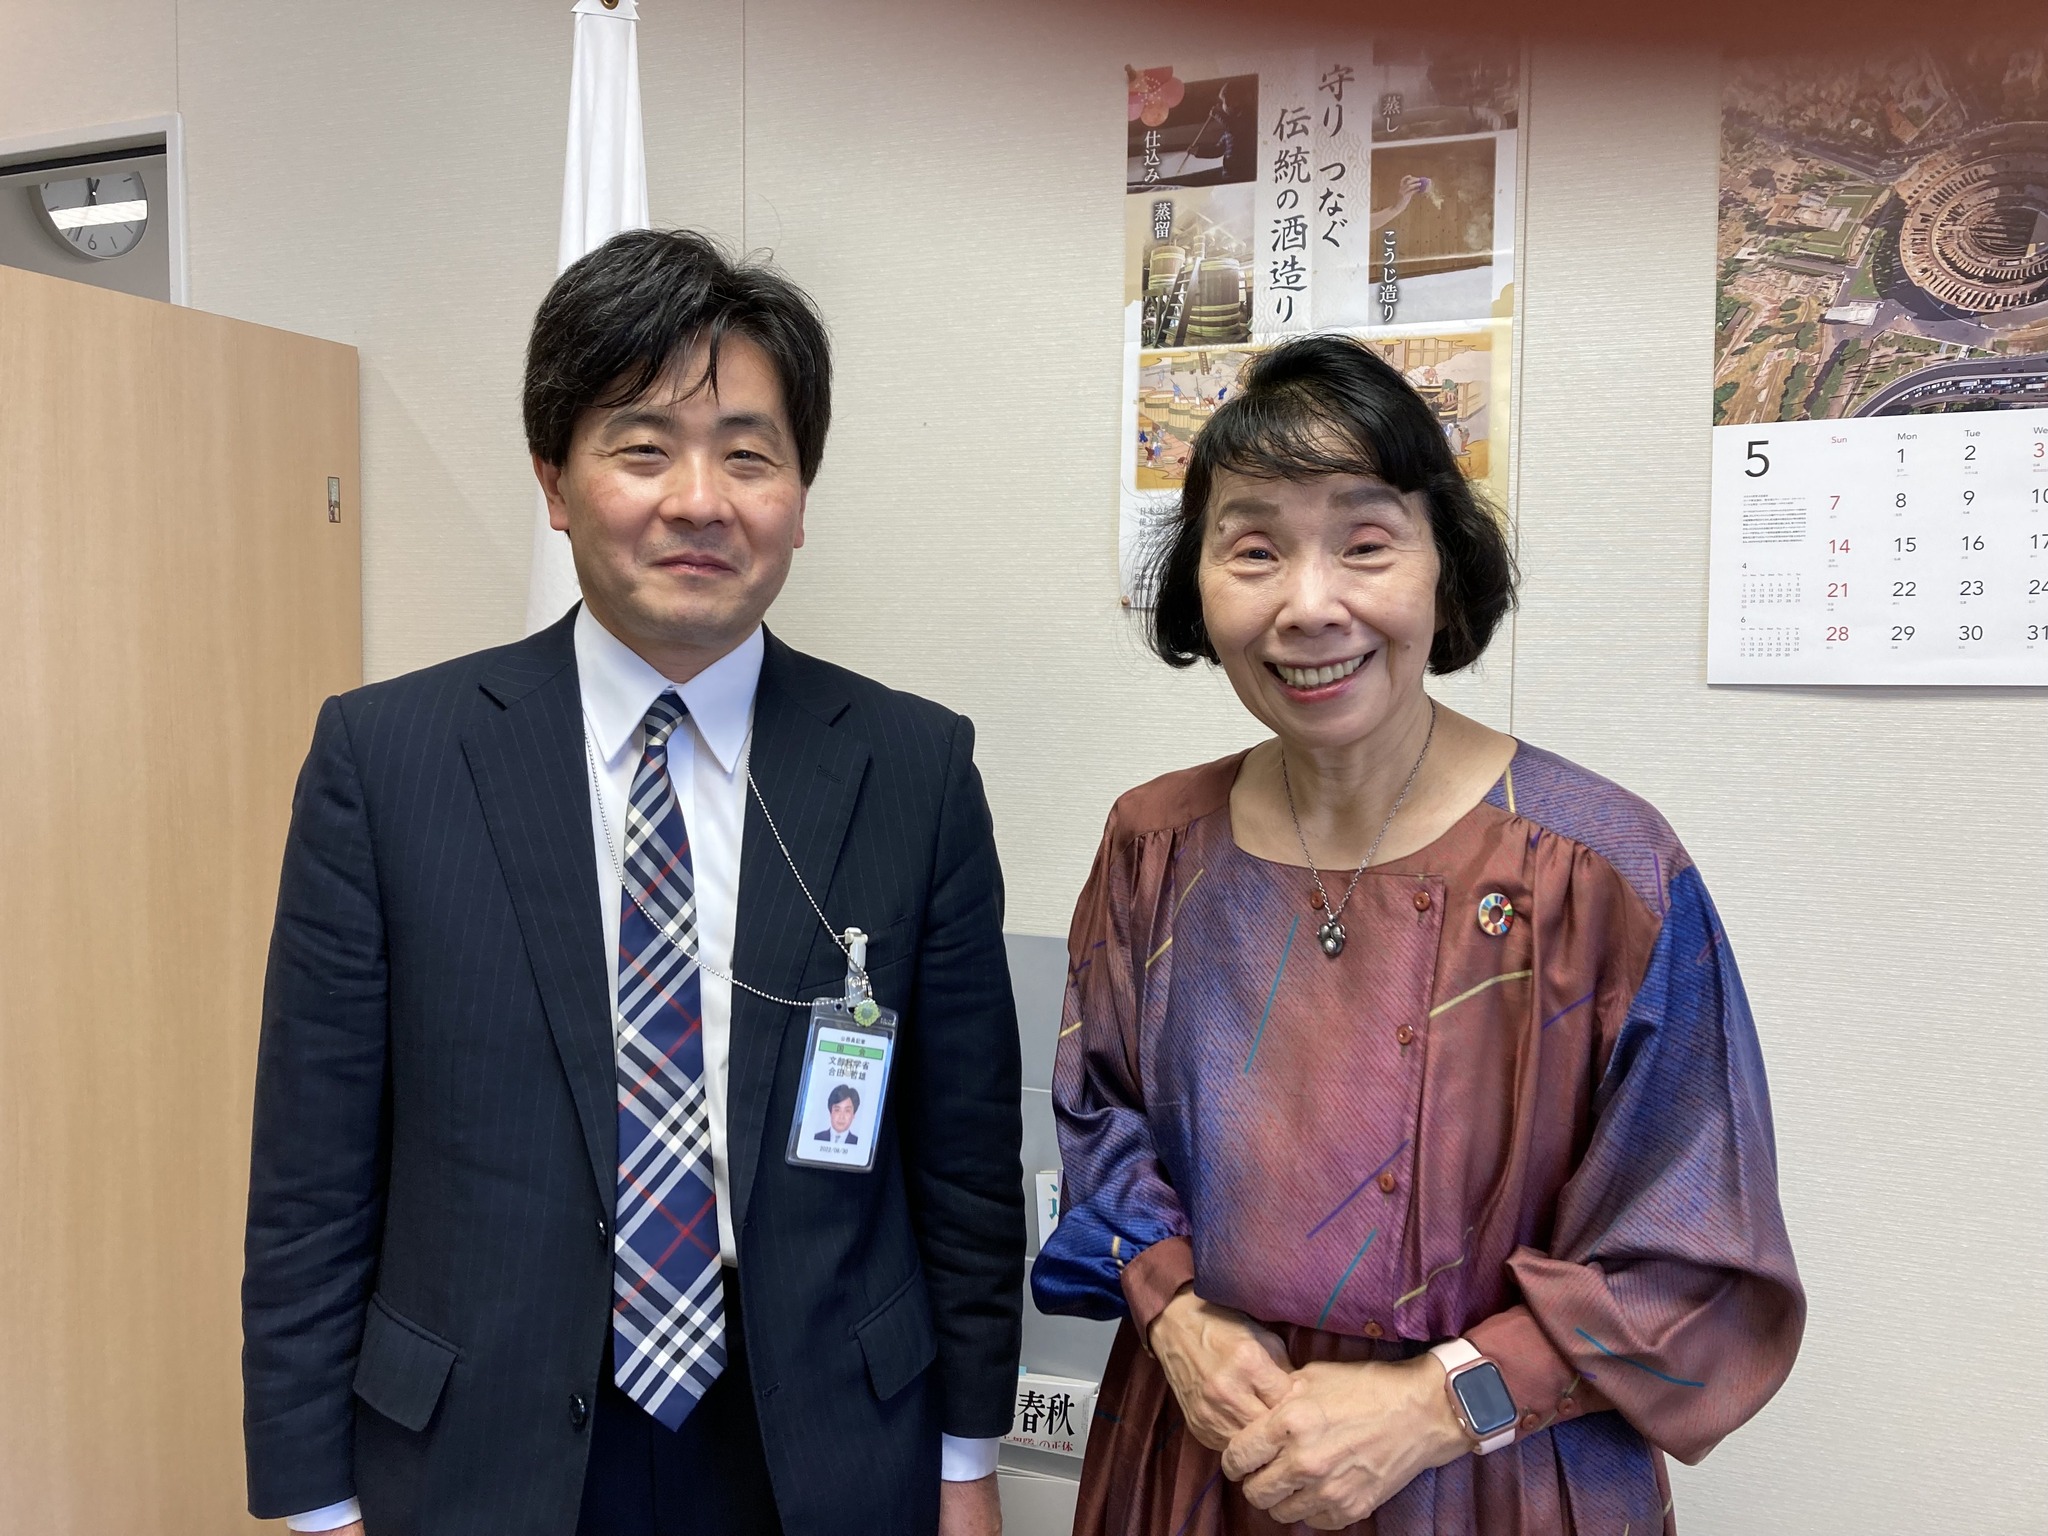 文化庁の合田次長と人財育成について対話しました